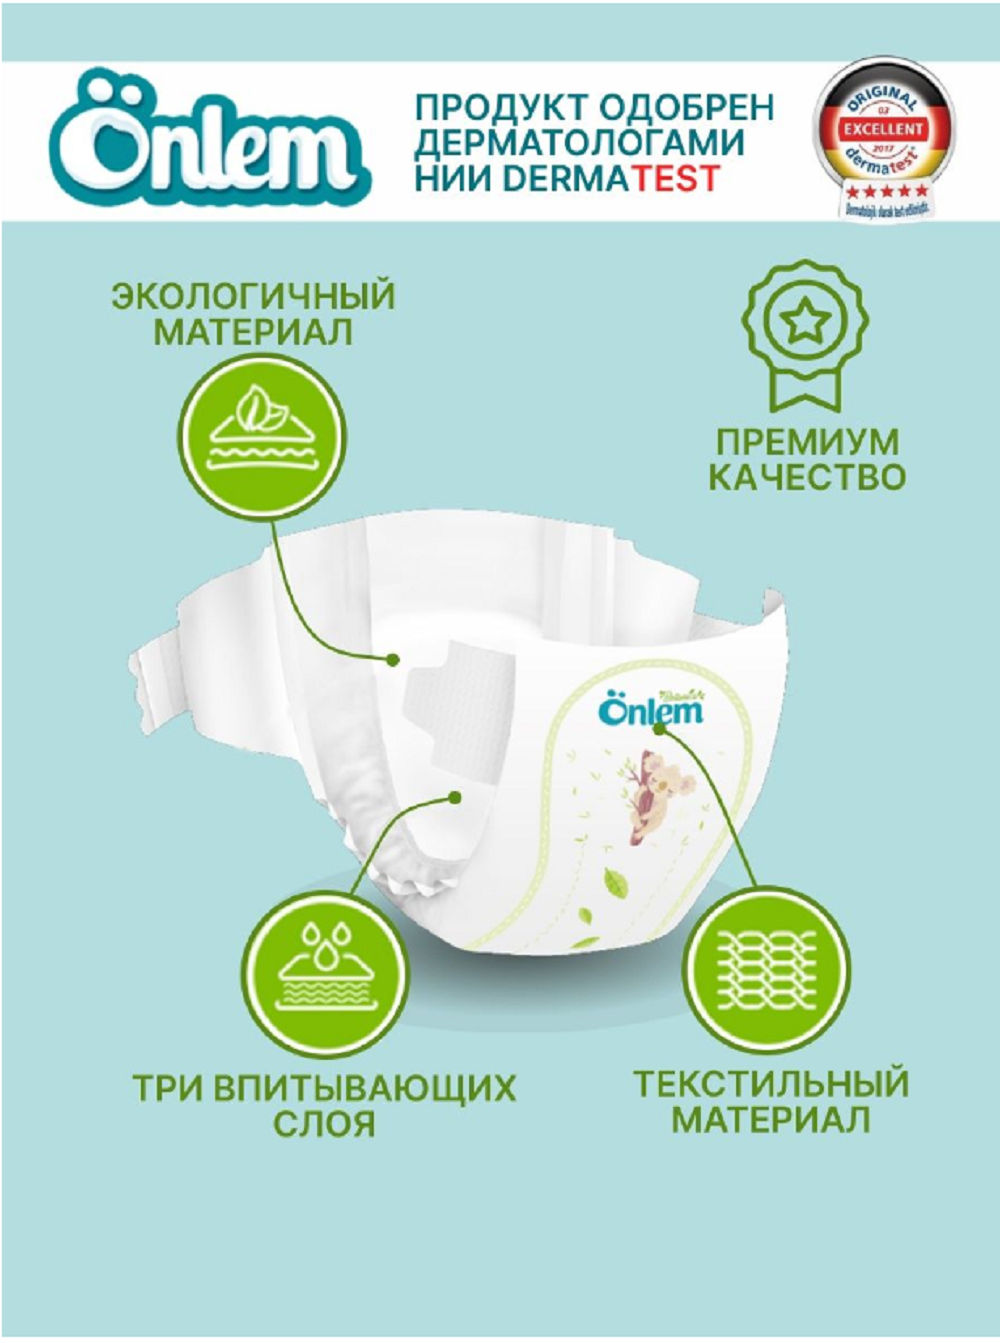 Подгузники Onlem для новорожденных BOTANIKA 1 (2-5 кг) mini 11 шт в упаковке - фото 2